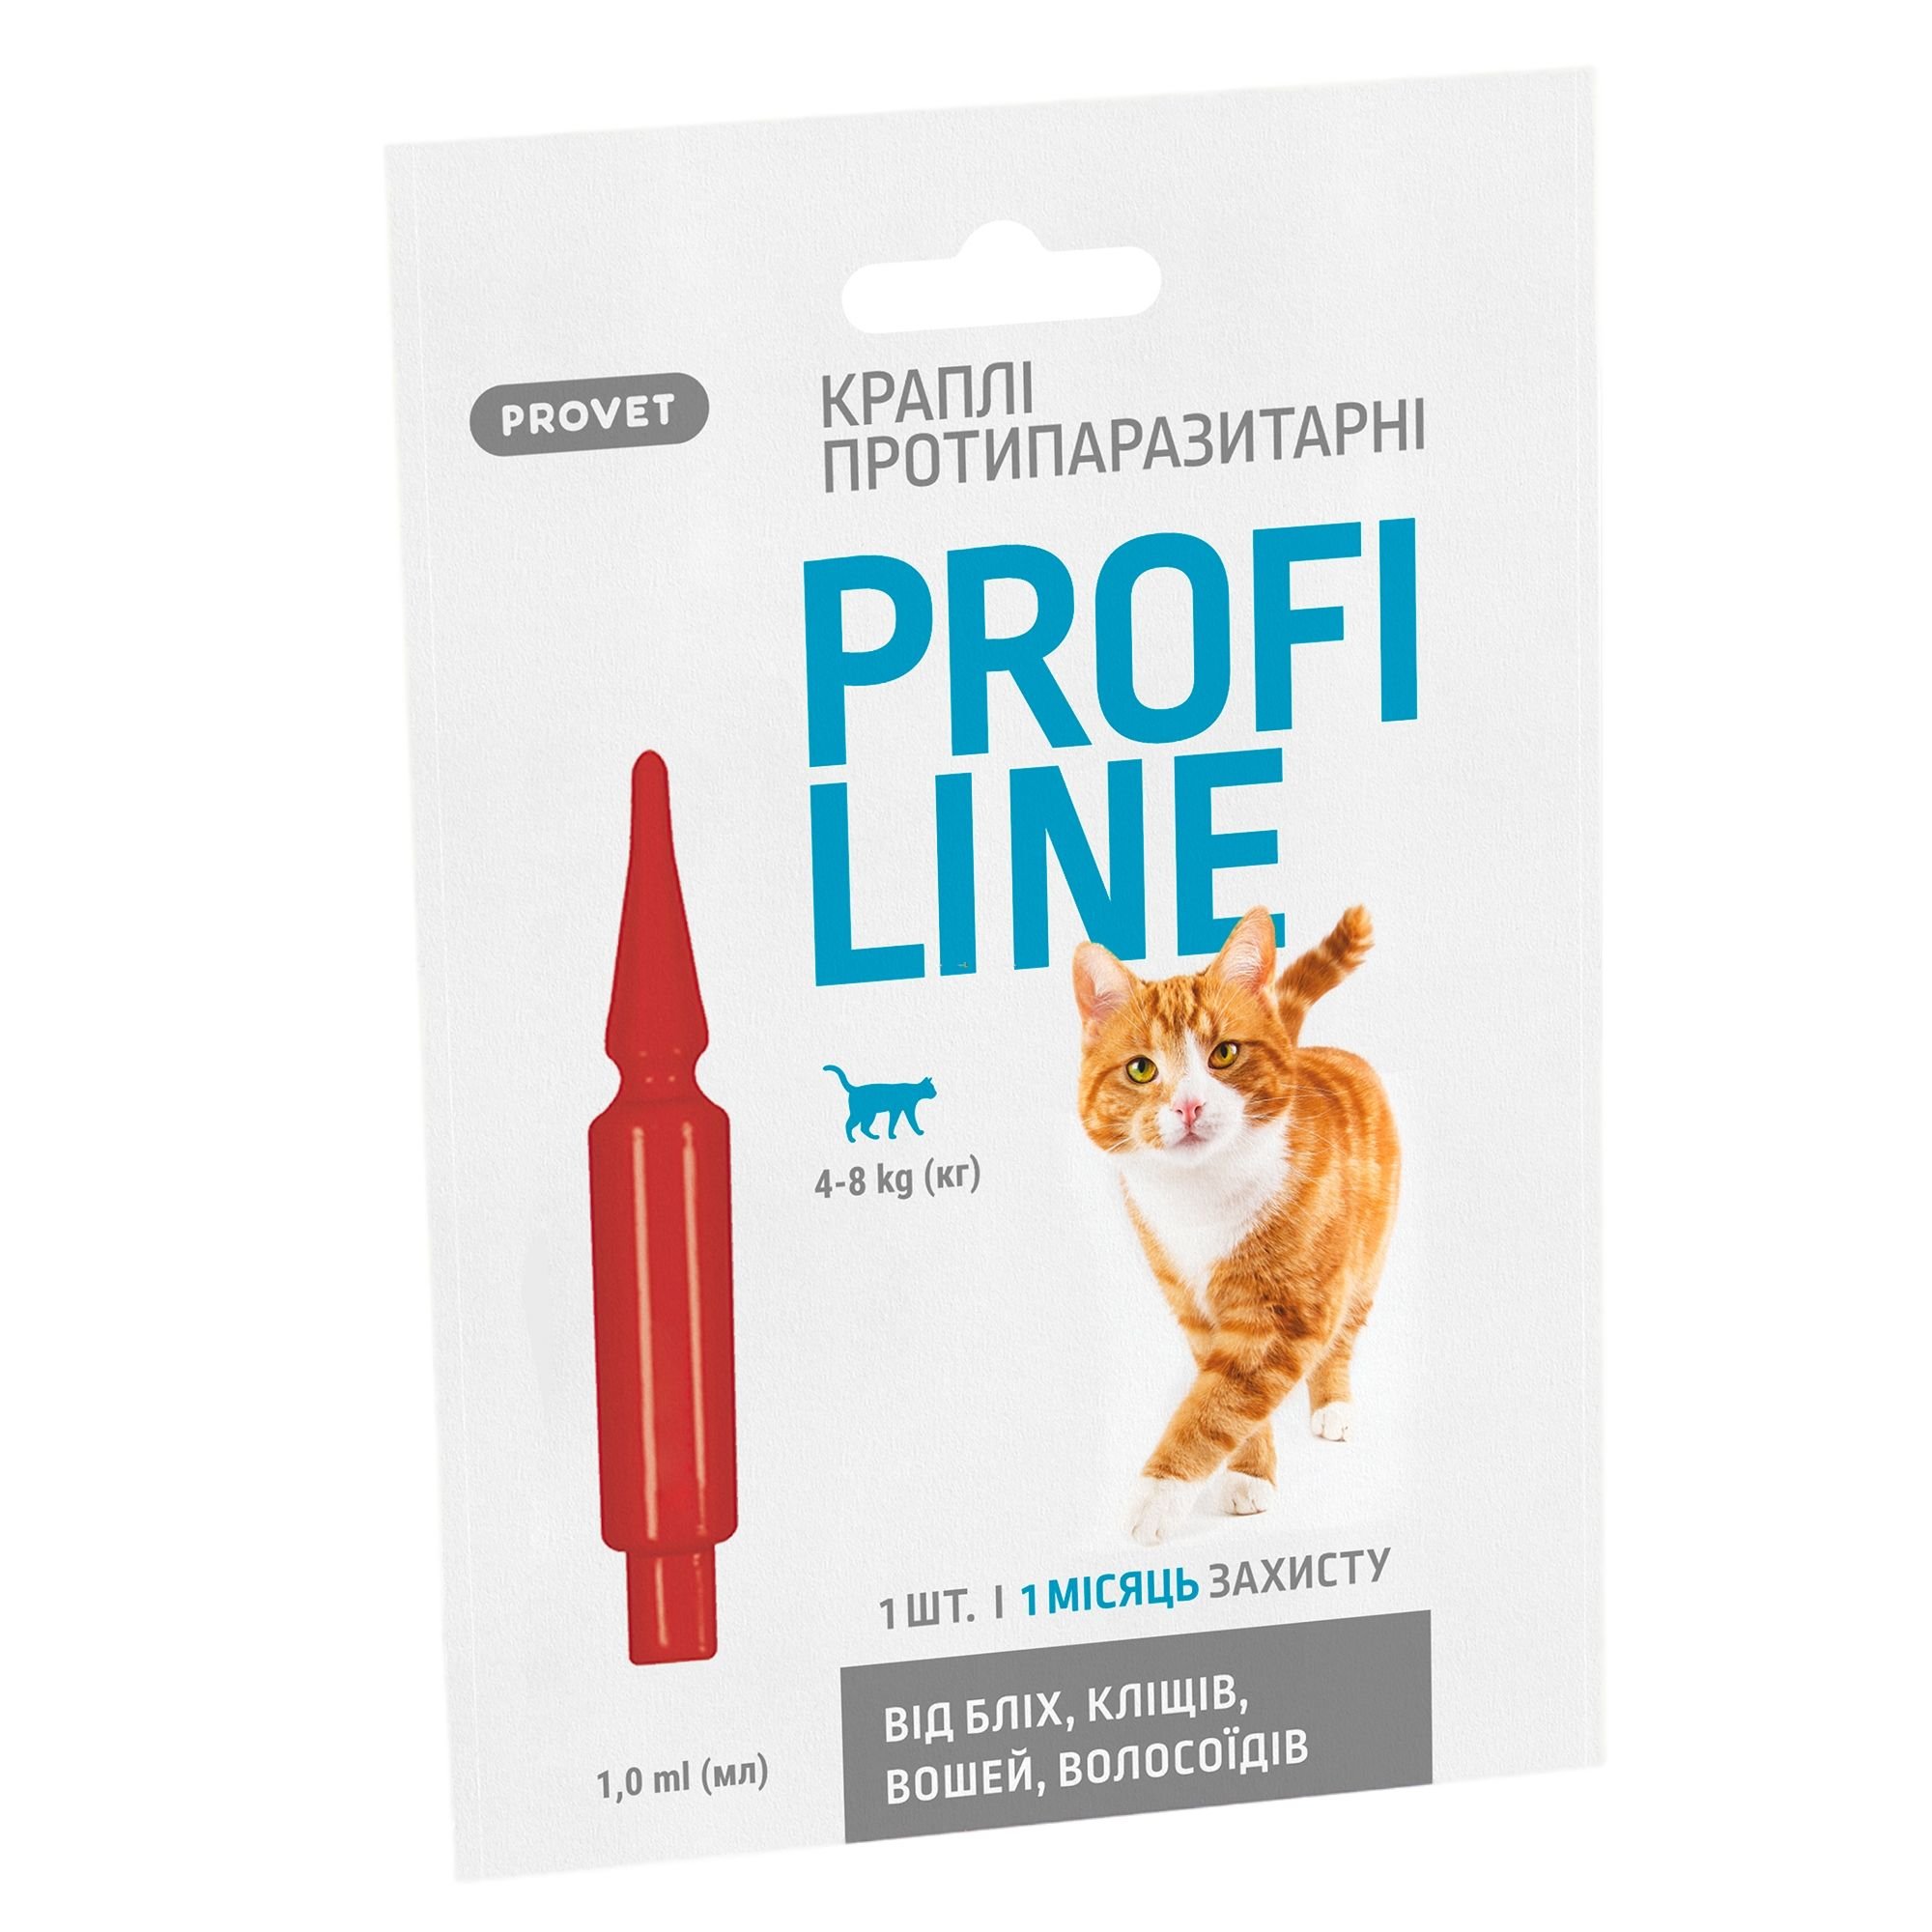 Капли на холку для кошек ProVET Profiline от внешних паразитов, от 4 до 8 кг, 1 пипетка 1 мл - фото 1